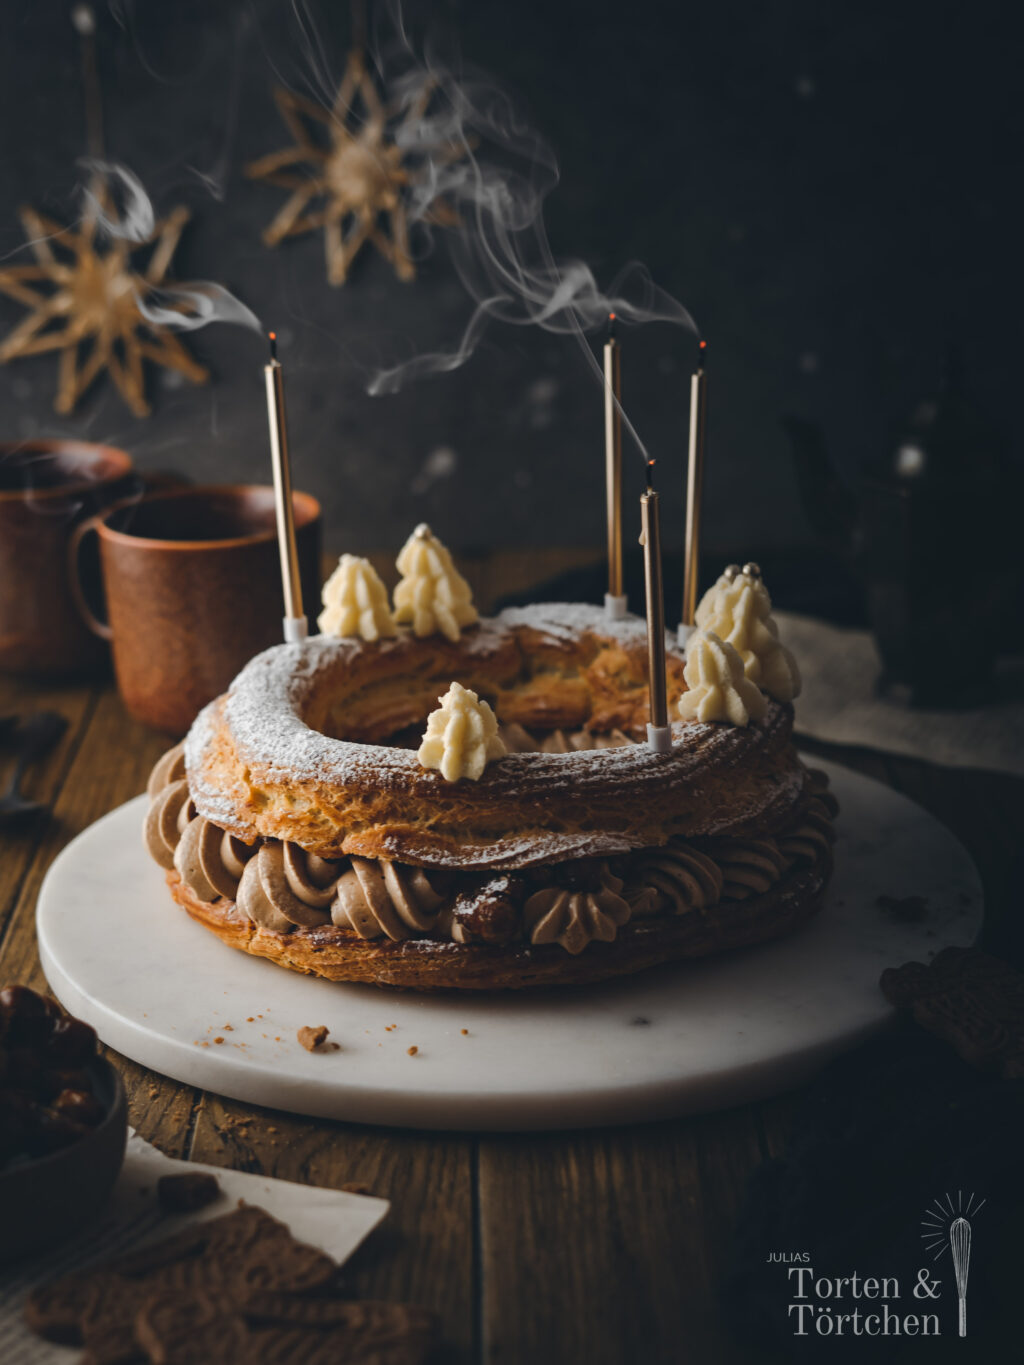 Festliches Rezept für eine winterliche weihnachtliche Torte. Paris Brest aus luftigem Brandteig, samtiger gewürzter Nougat Creme und knusprigen karamellisierten Haselnüssen. #Backen #weihnachtsmenü #weihnachtstorte #winterkuchen #weihnachtsbäckerei #parisbrest